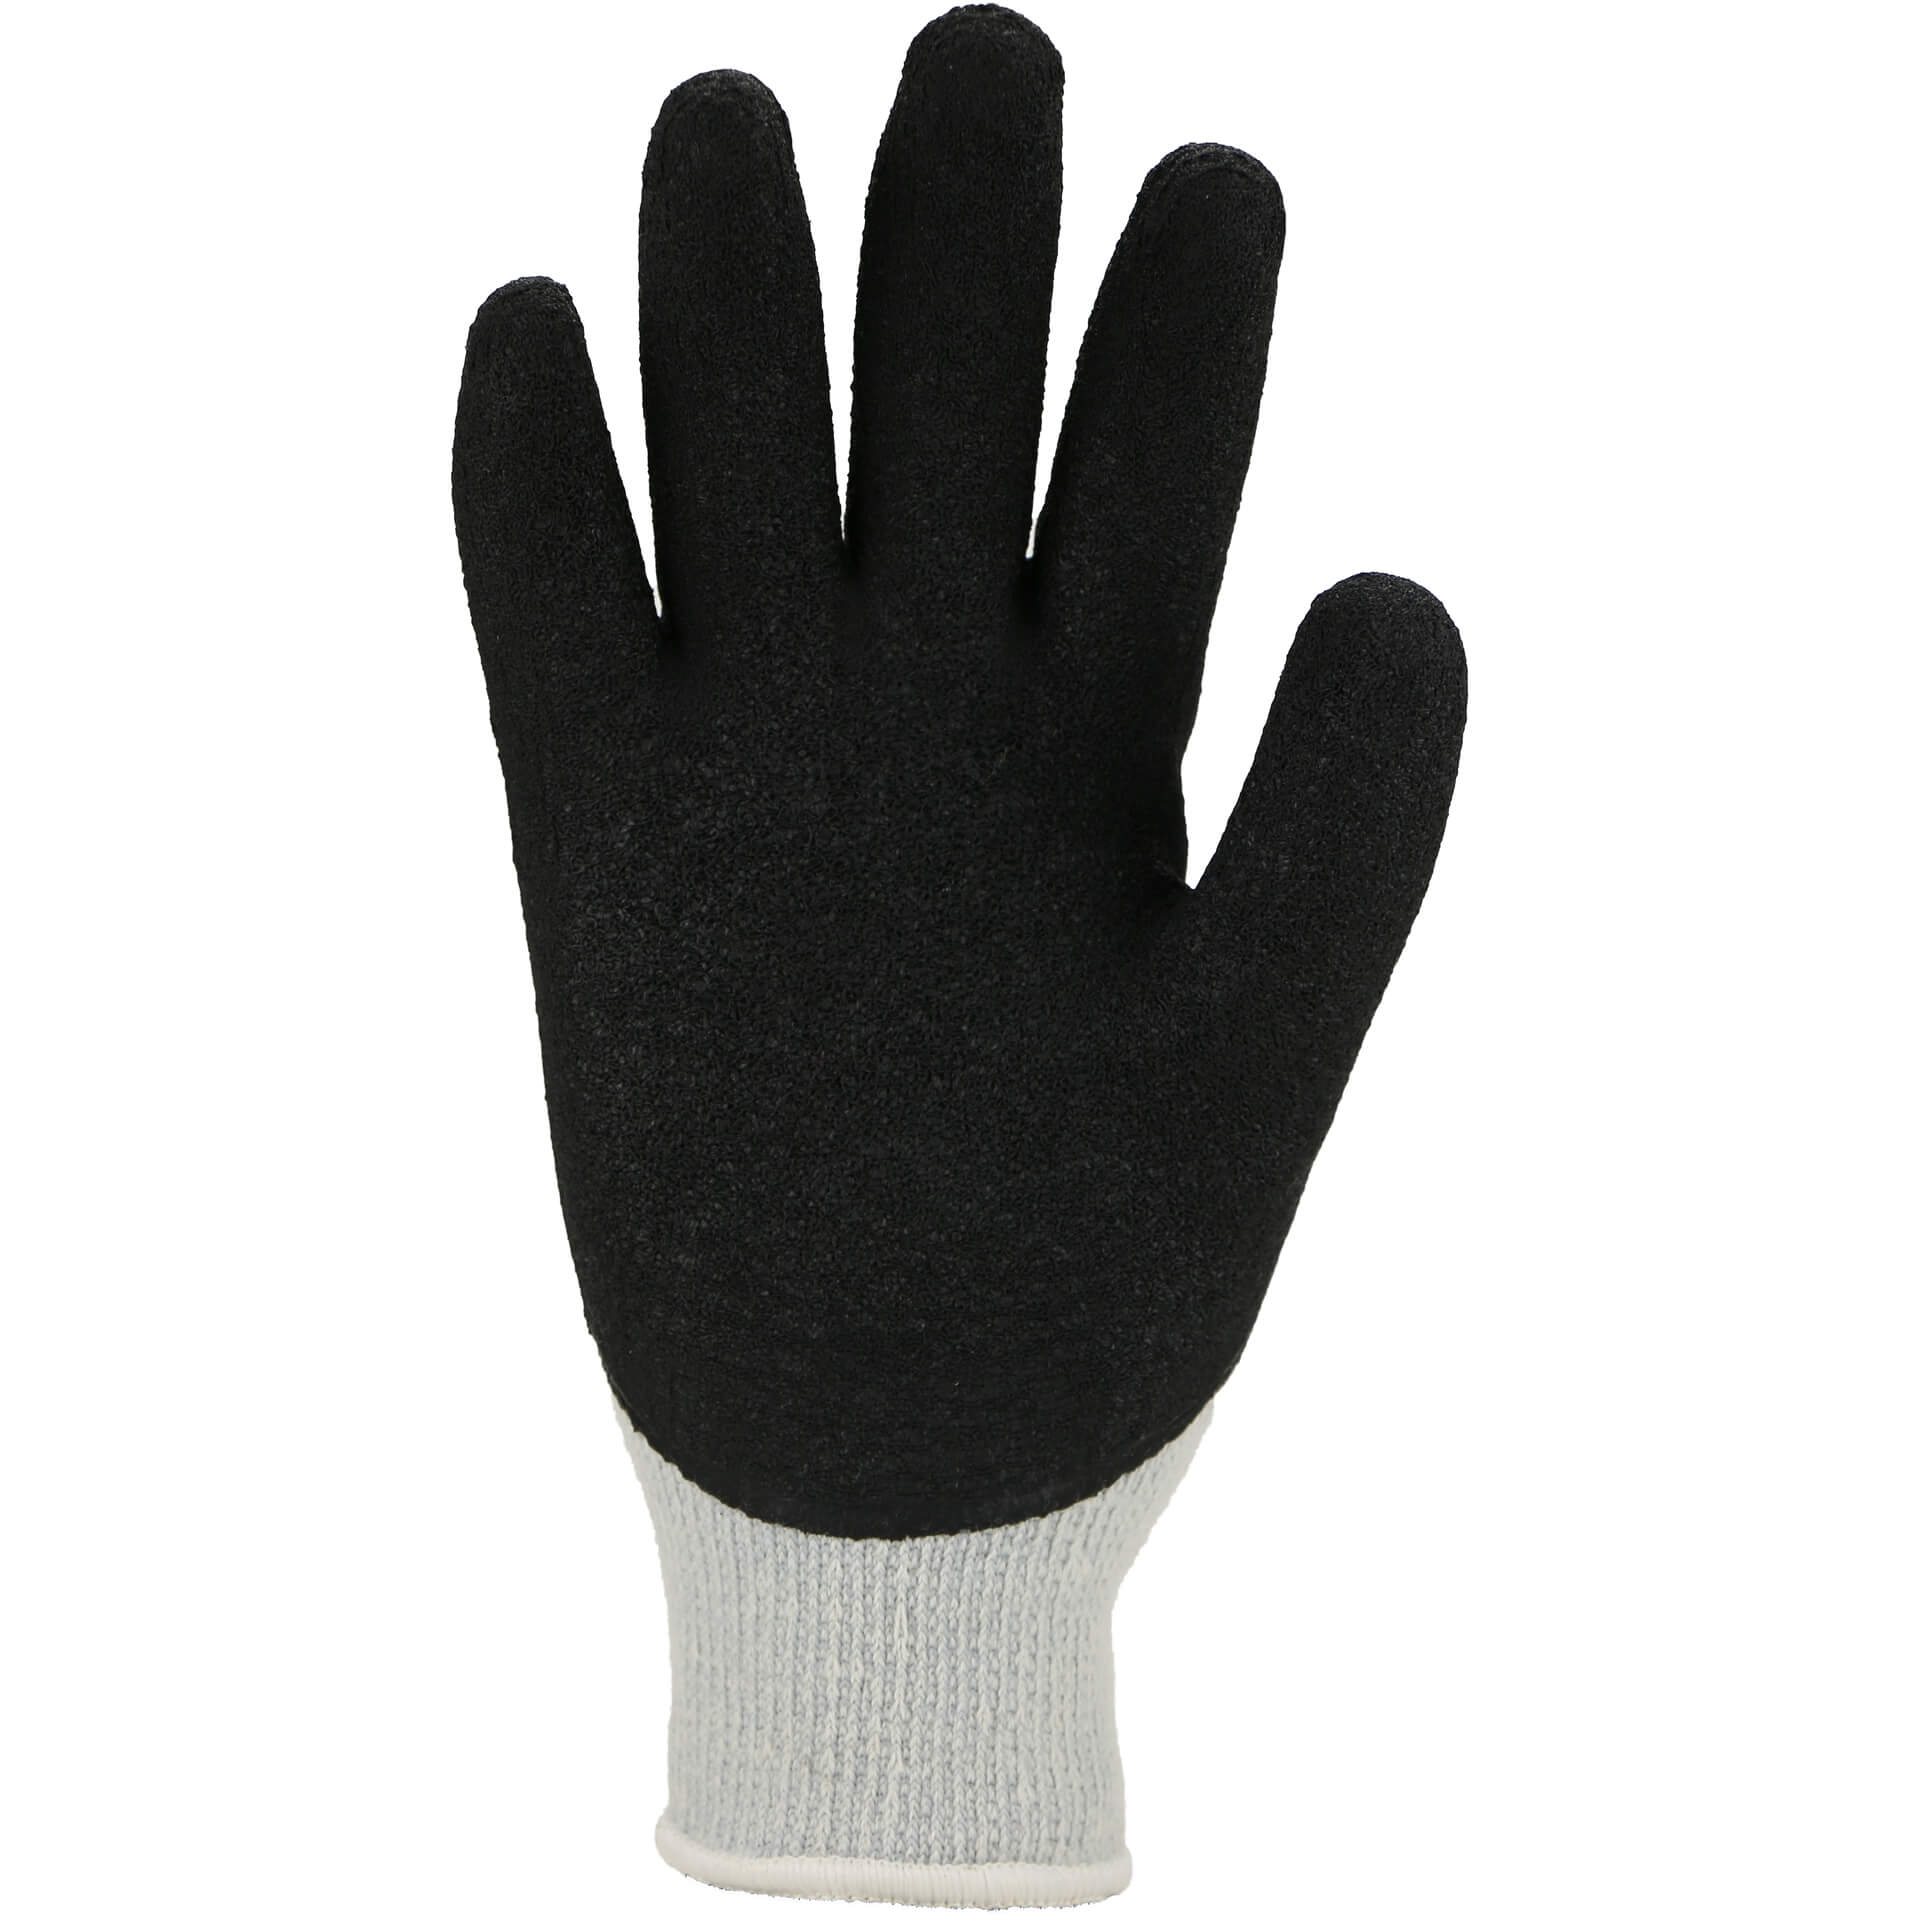 Produktabbildung Strick-Winter-Handschuh 3675